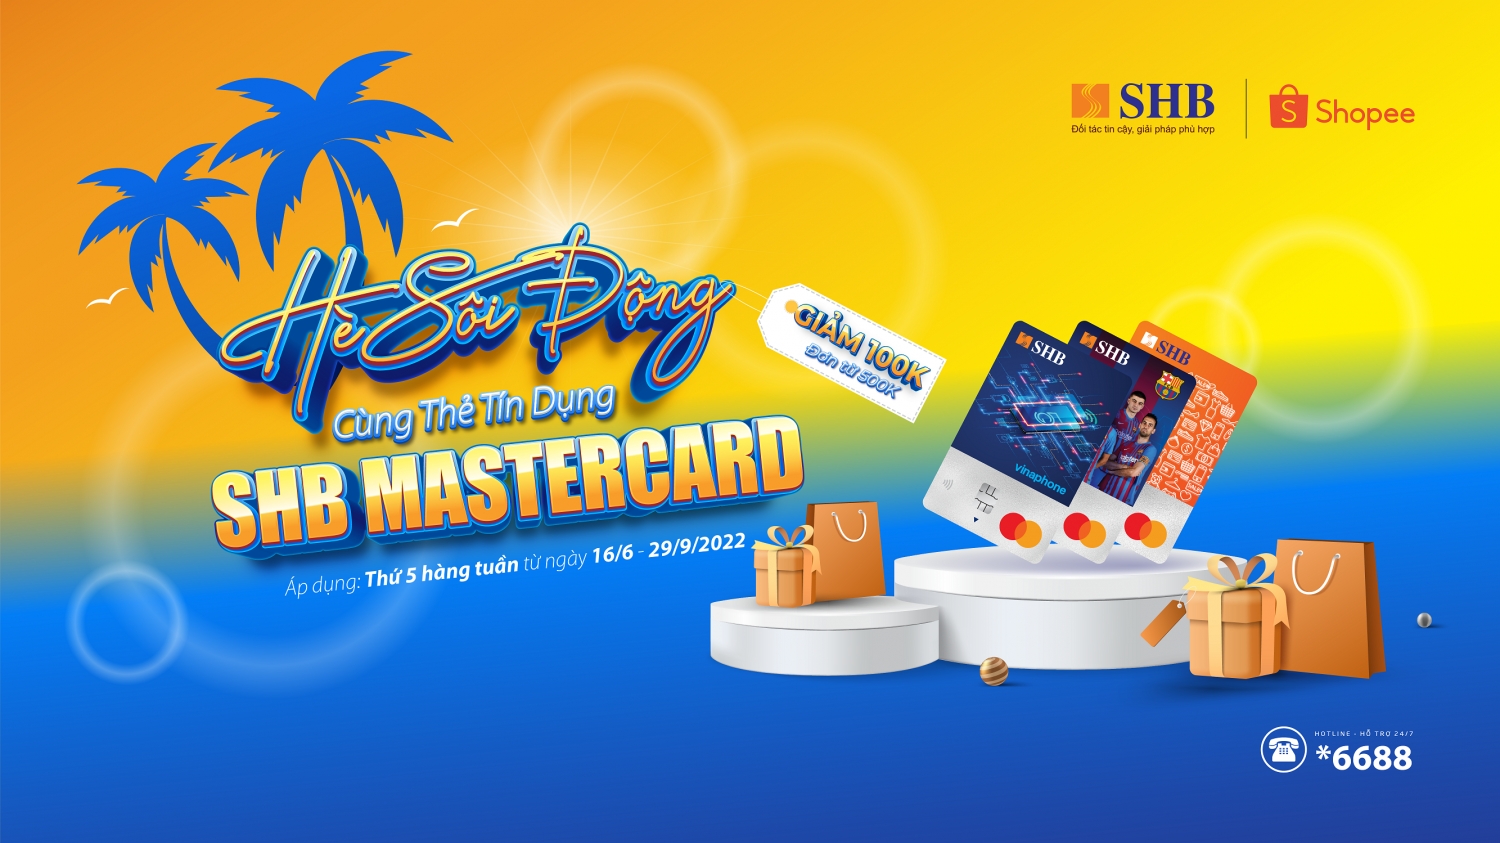 Giảm ngay 100.000 VND khi thanh toán bằng thẻ tín dụng SHB Mastercard tại Shopee